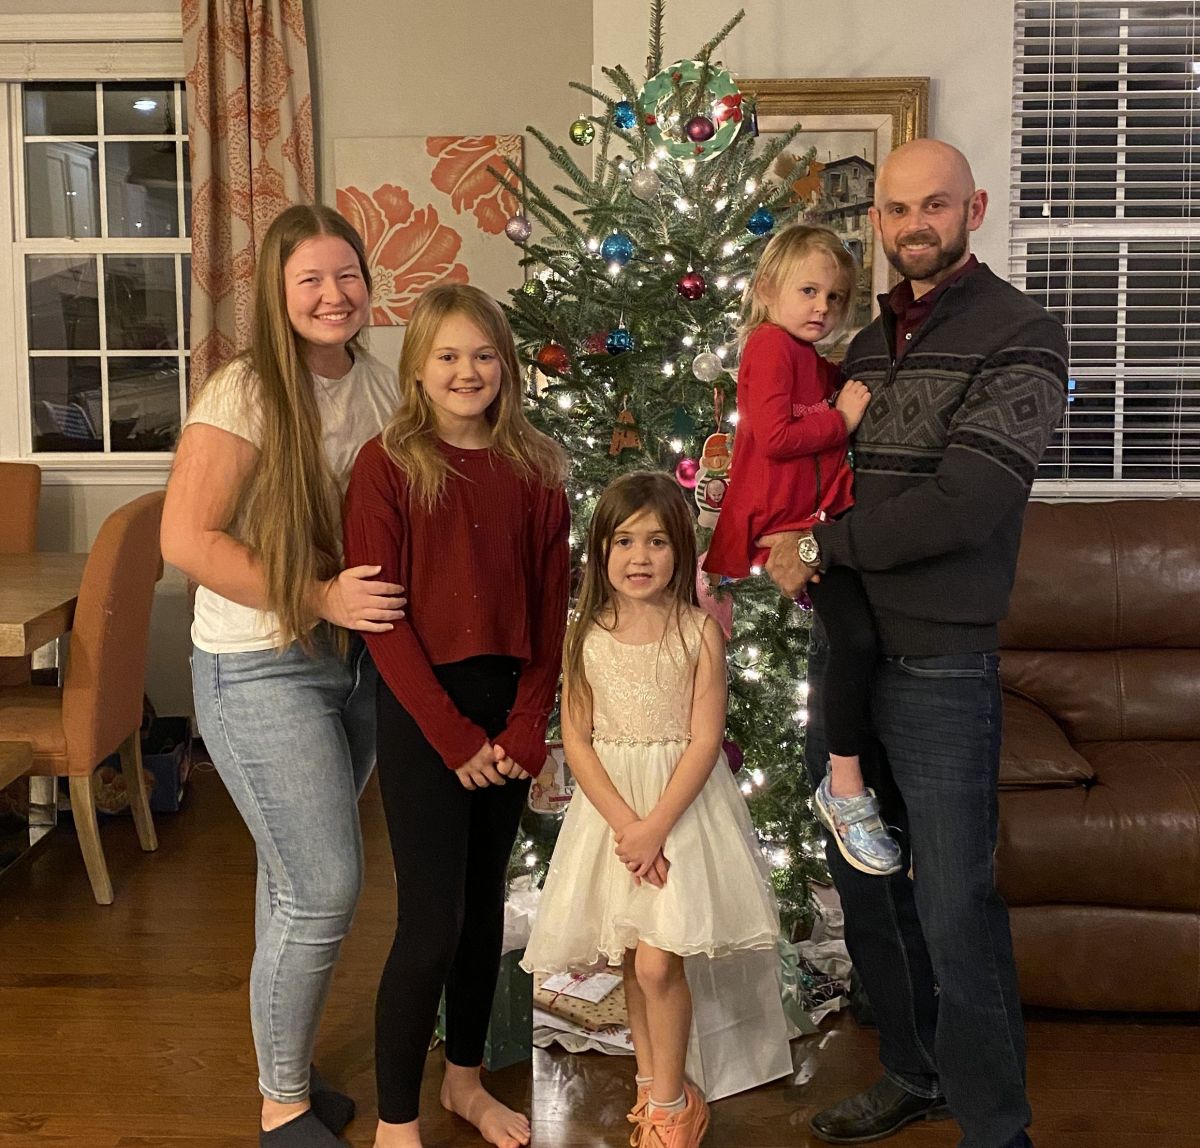 Melina Menne aus Kirchveischede feiert bereits ihr zweites Weihnachtsfest in North Carolina. Vor allem die Vorfreude der drei Töchter ihrer Familie sei ansteckend, schreibt sie an LokalPlus. von Melina Menne